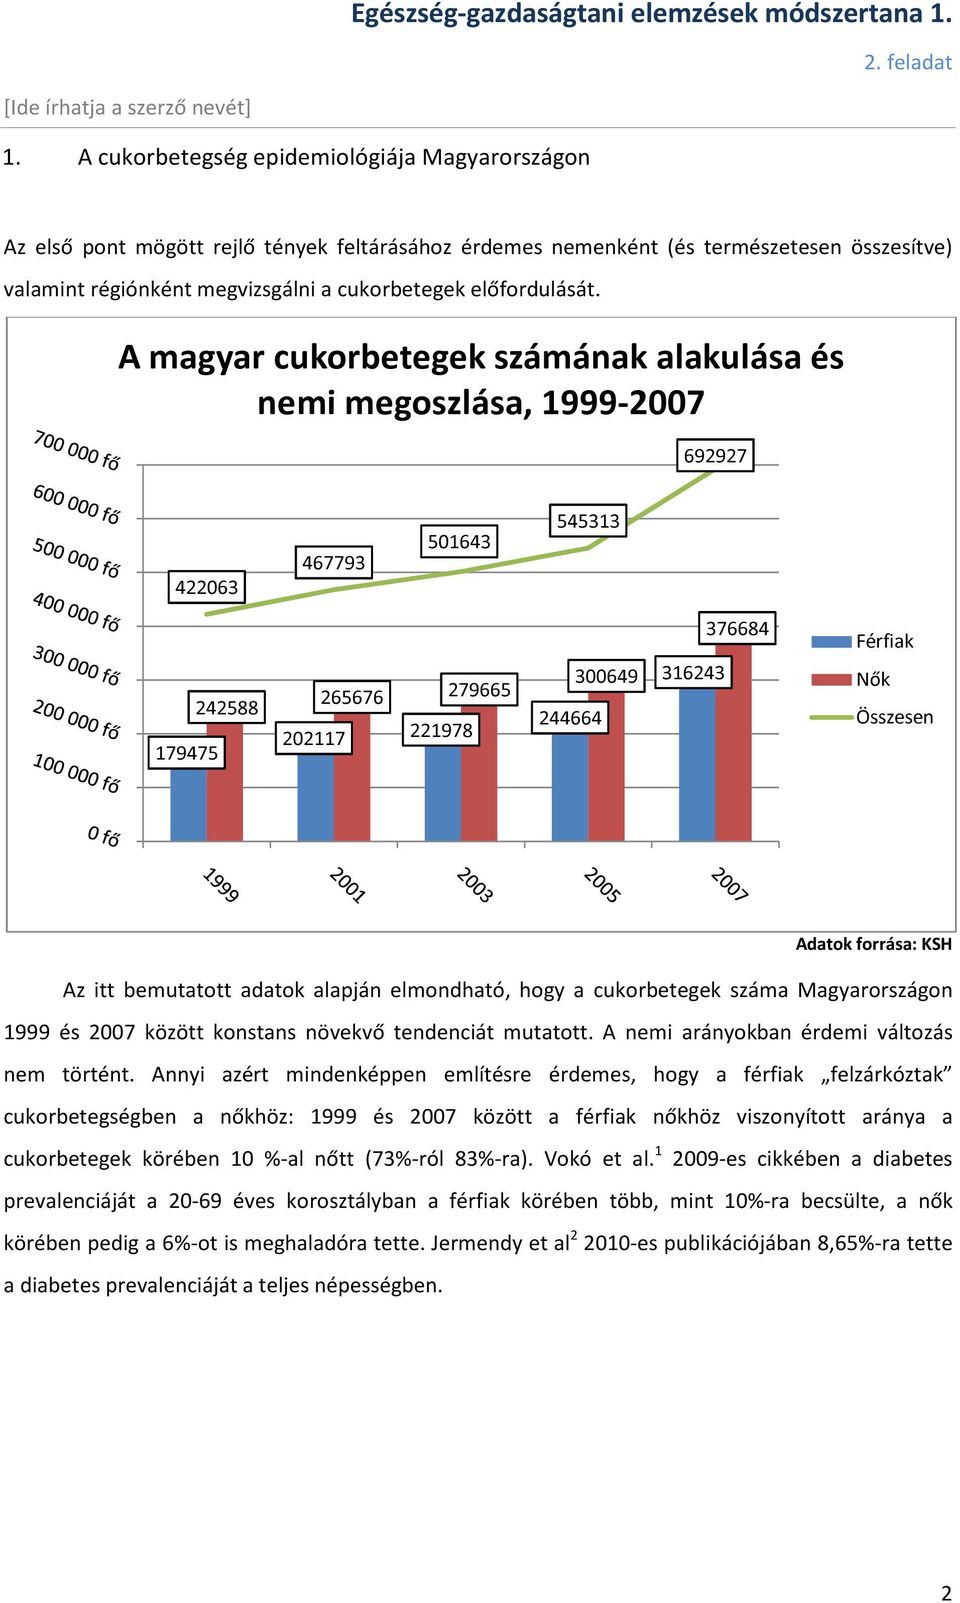 cukorbetegség statisztika magyarország - cukorbetegség gyógyítása alternatív módszerekkel